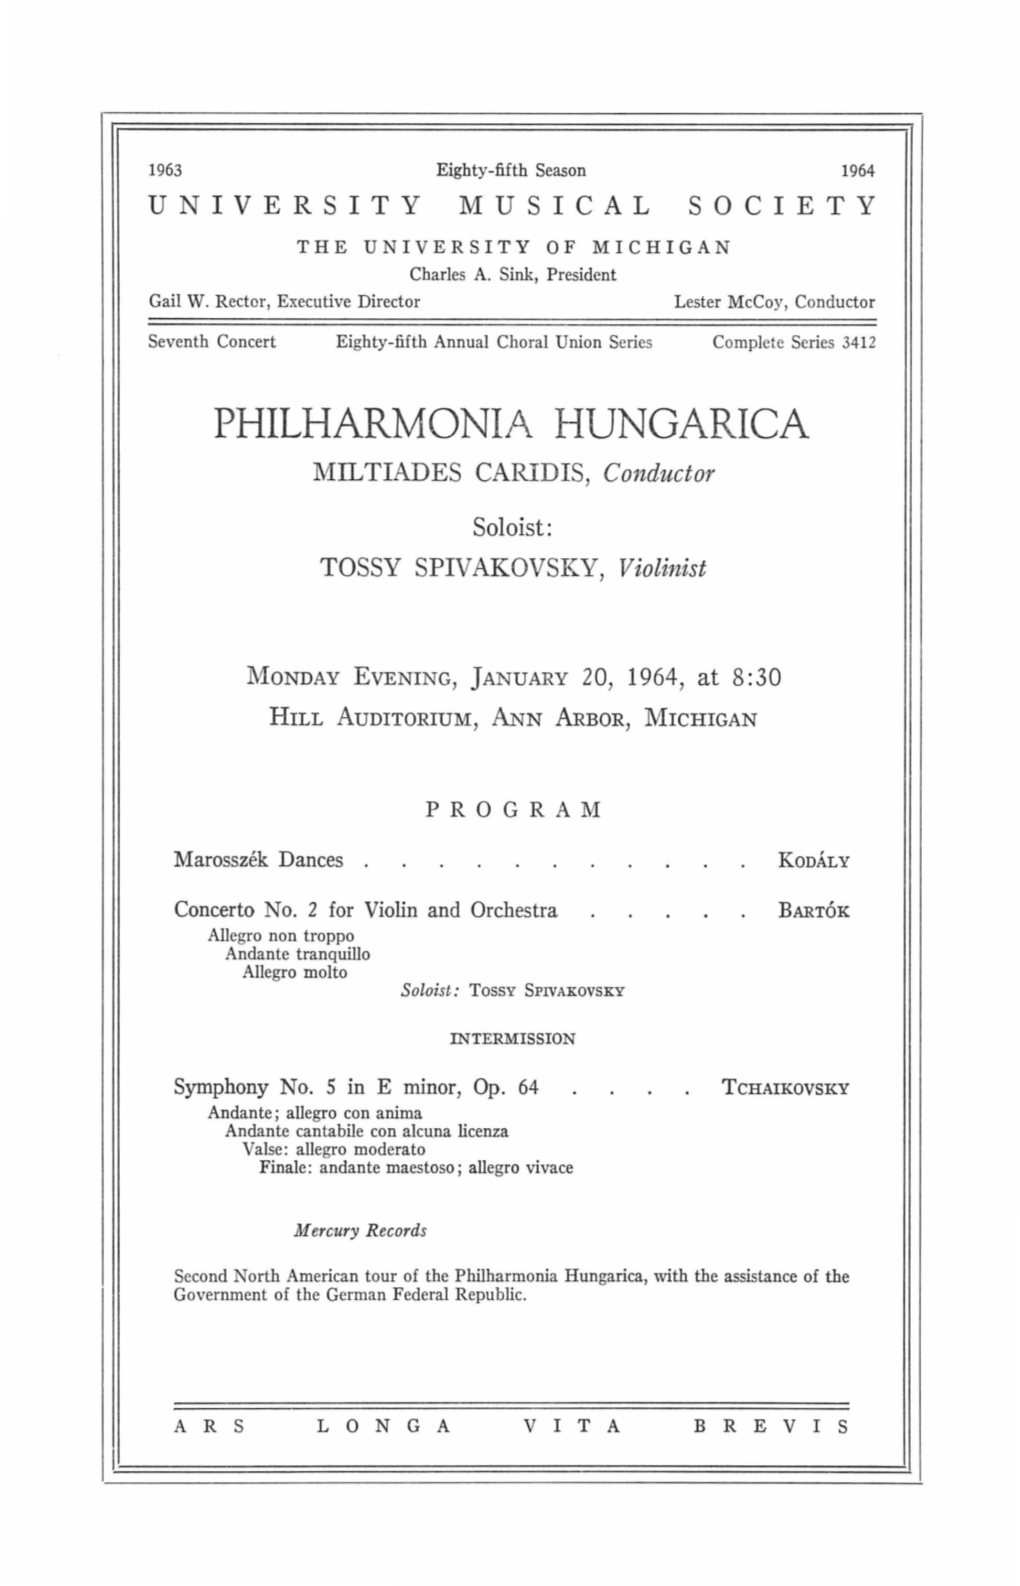 PHILHARMONIA HUNGARICA MILTIADES CARIDIS, Conductor